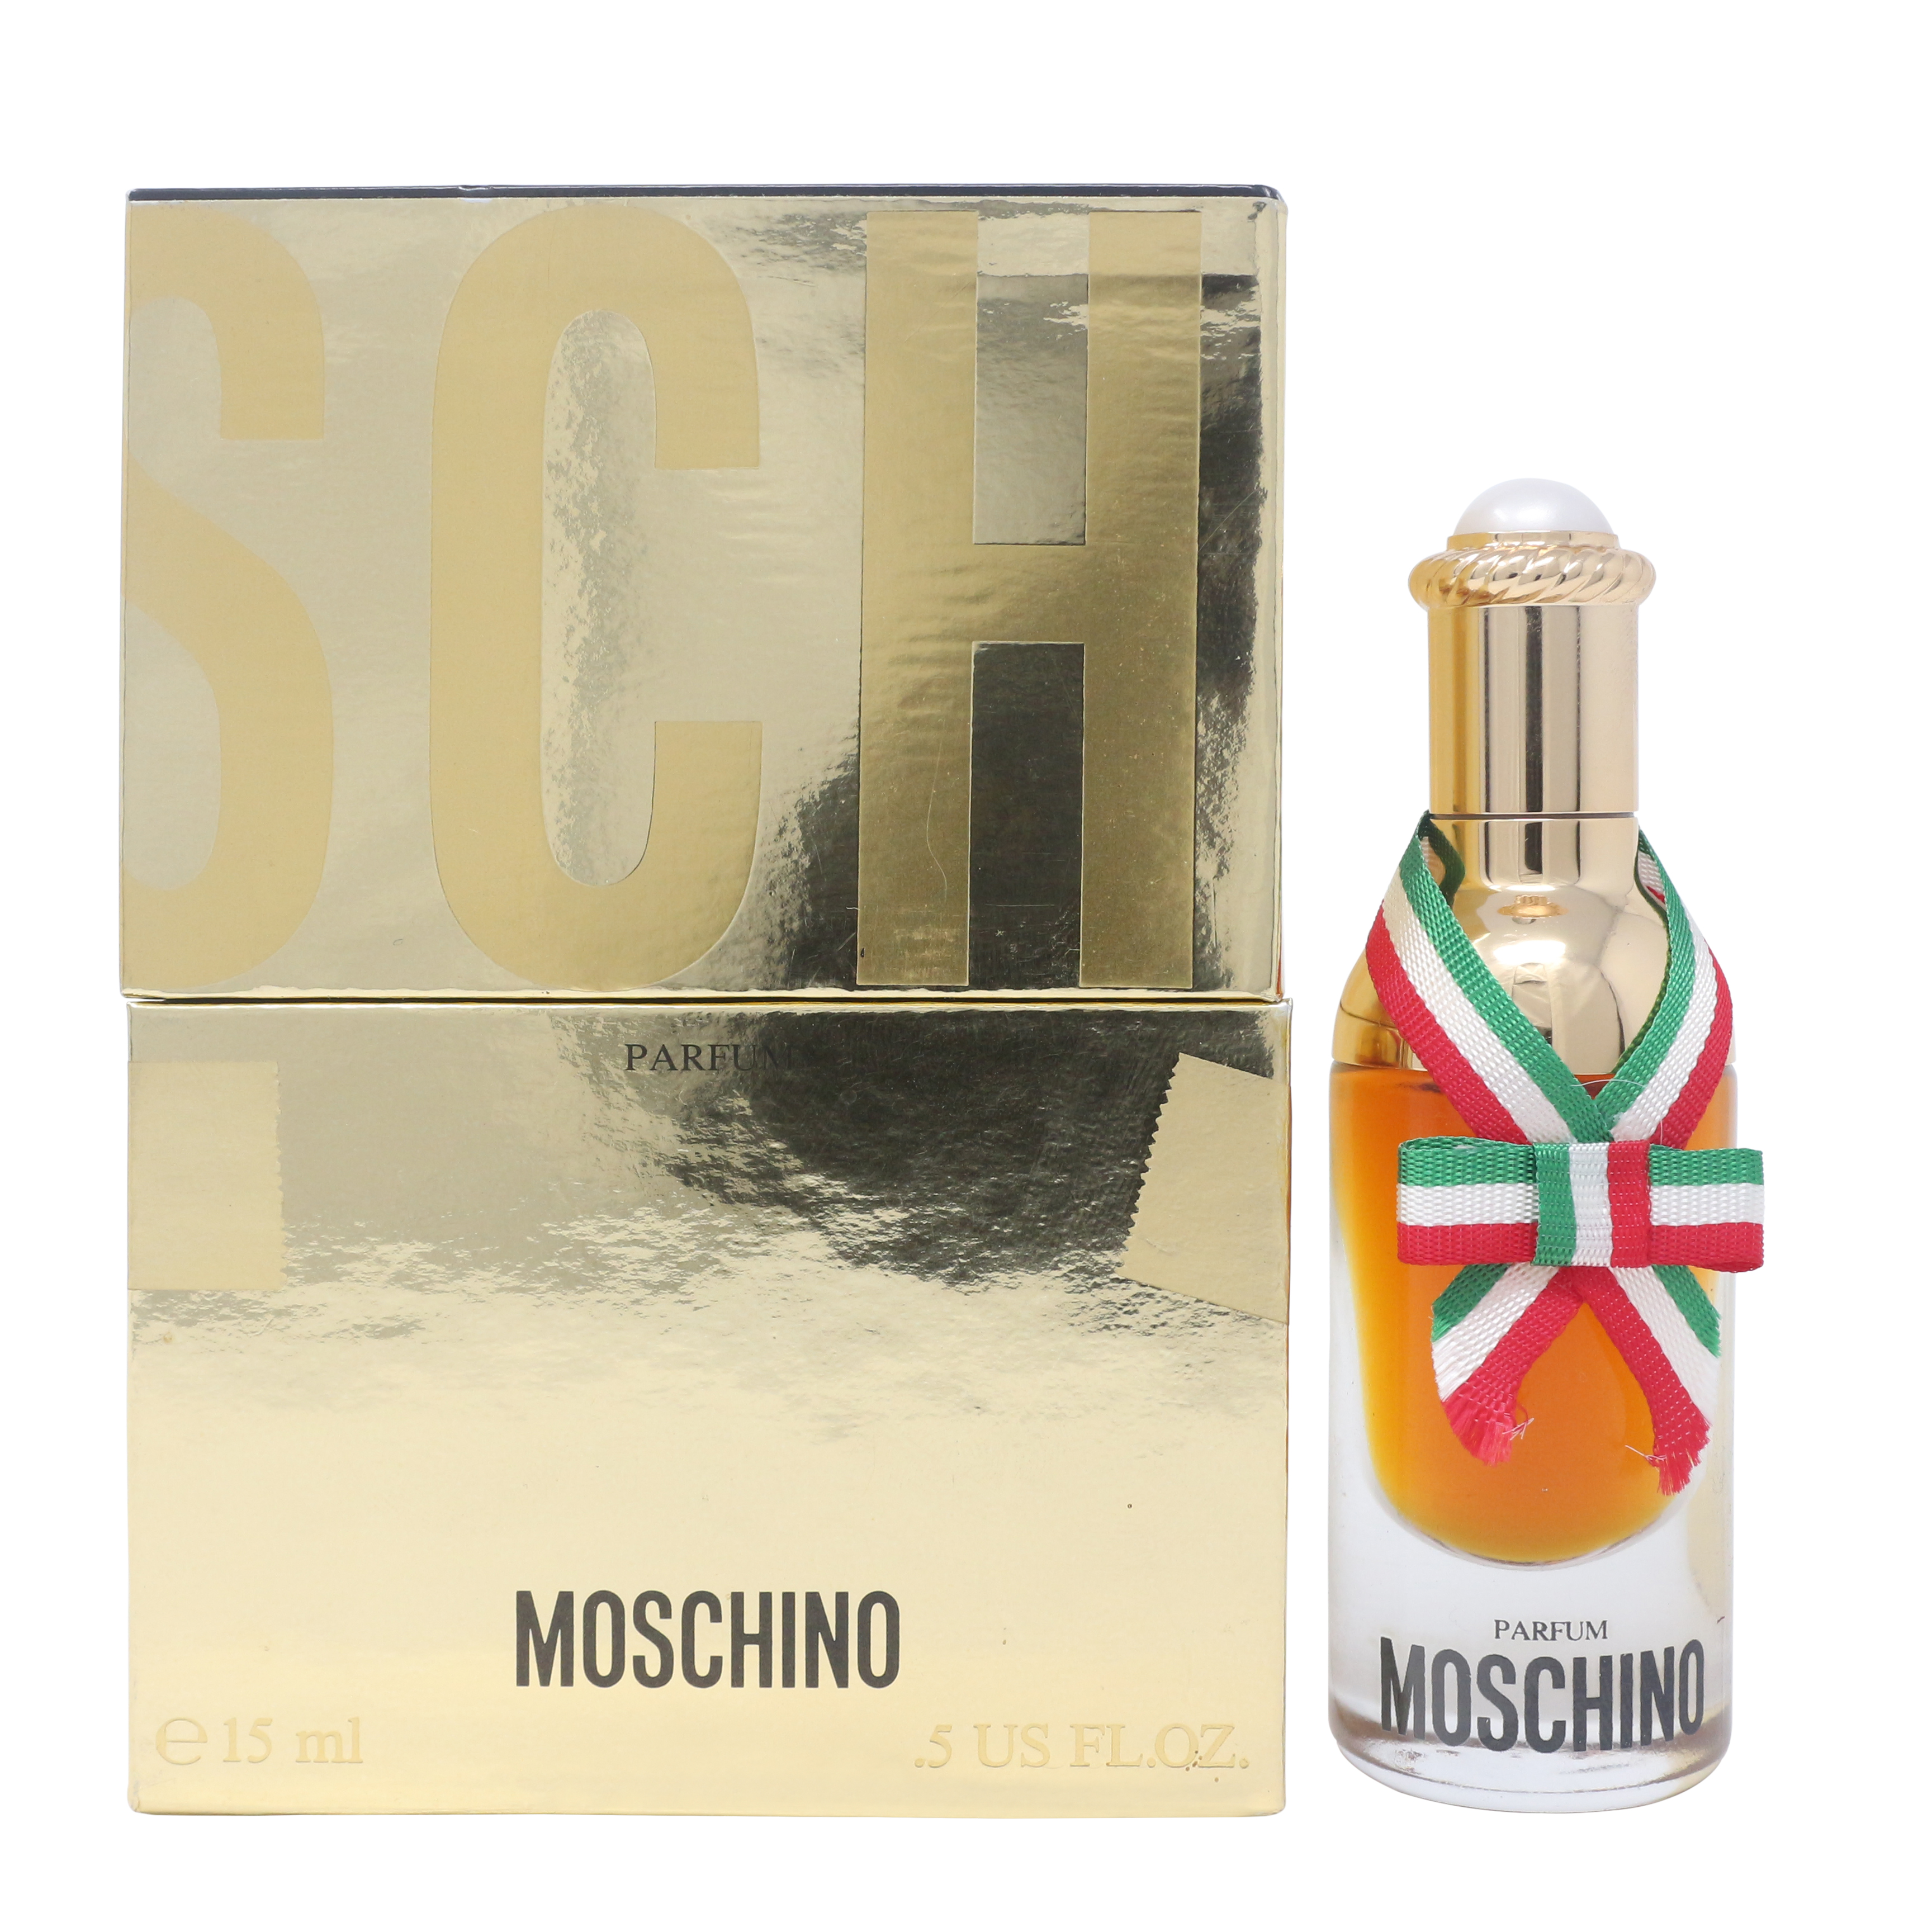 Moschino by Moschino Parfum/Perfume 0.5oz/15ml Splash New In Box ...